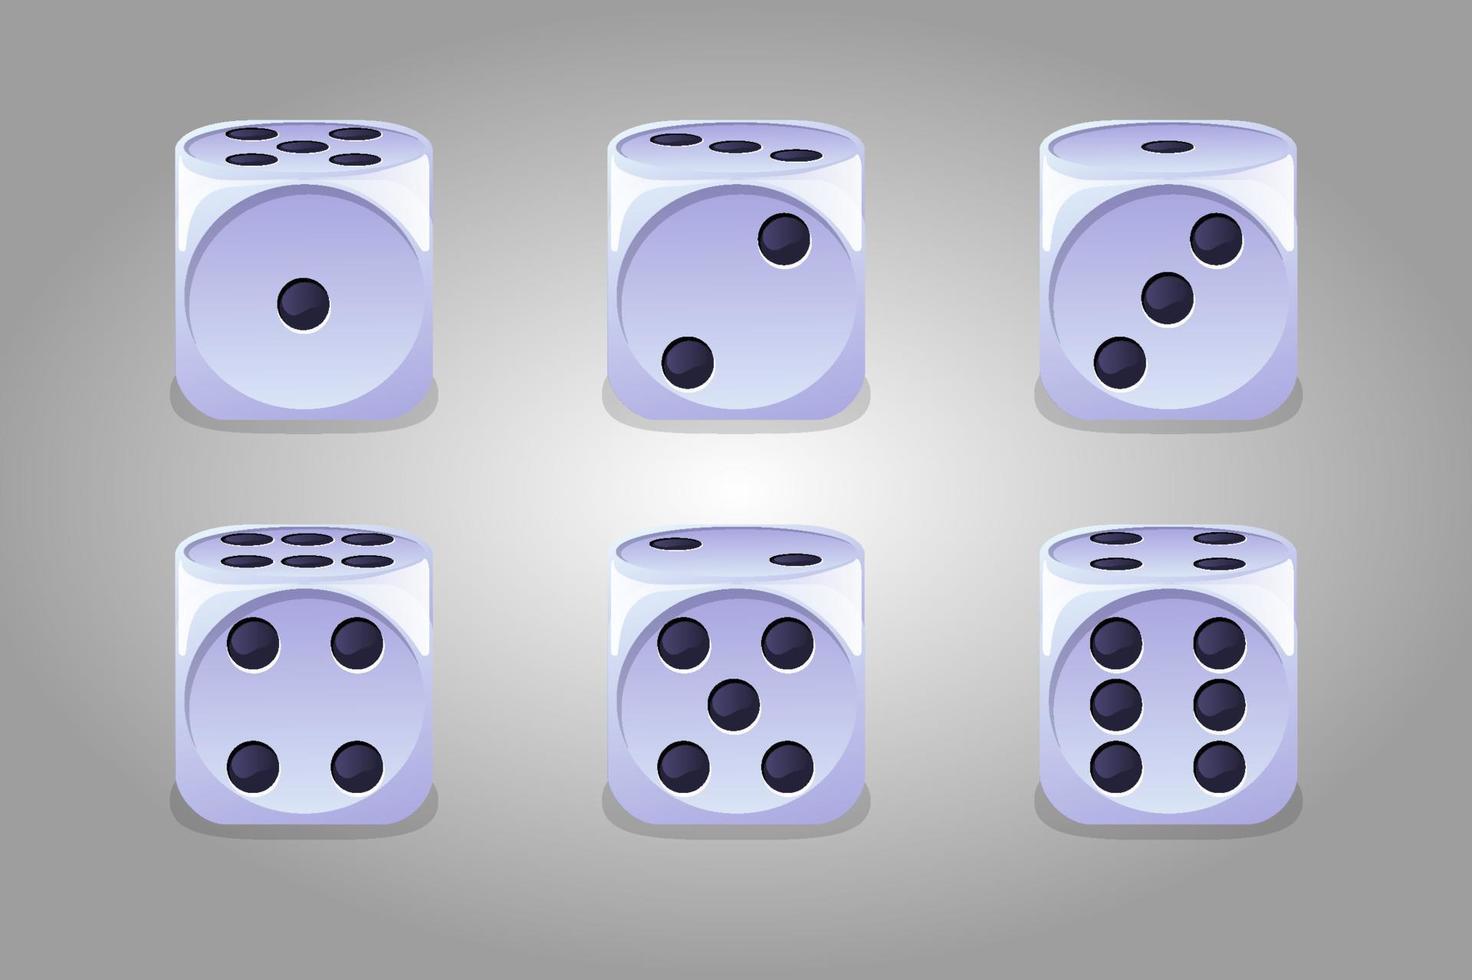 raccolta vettoriale di dadi bianchi di gioco isolati. set di cubi da gioco per il gioco d'azzardo.